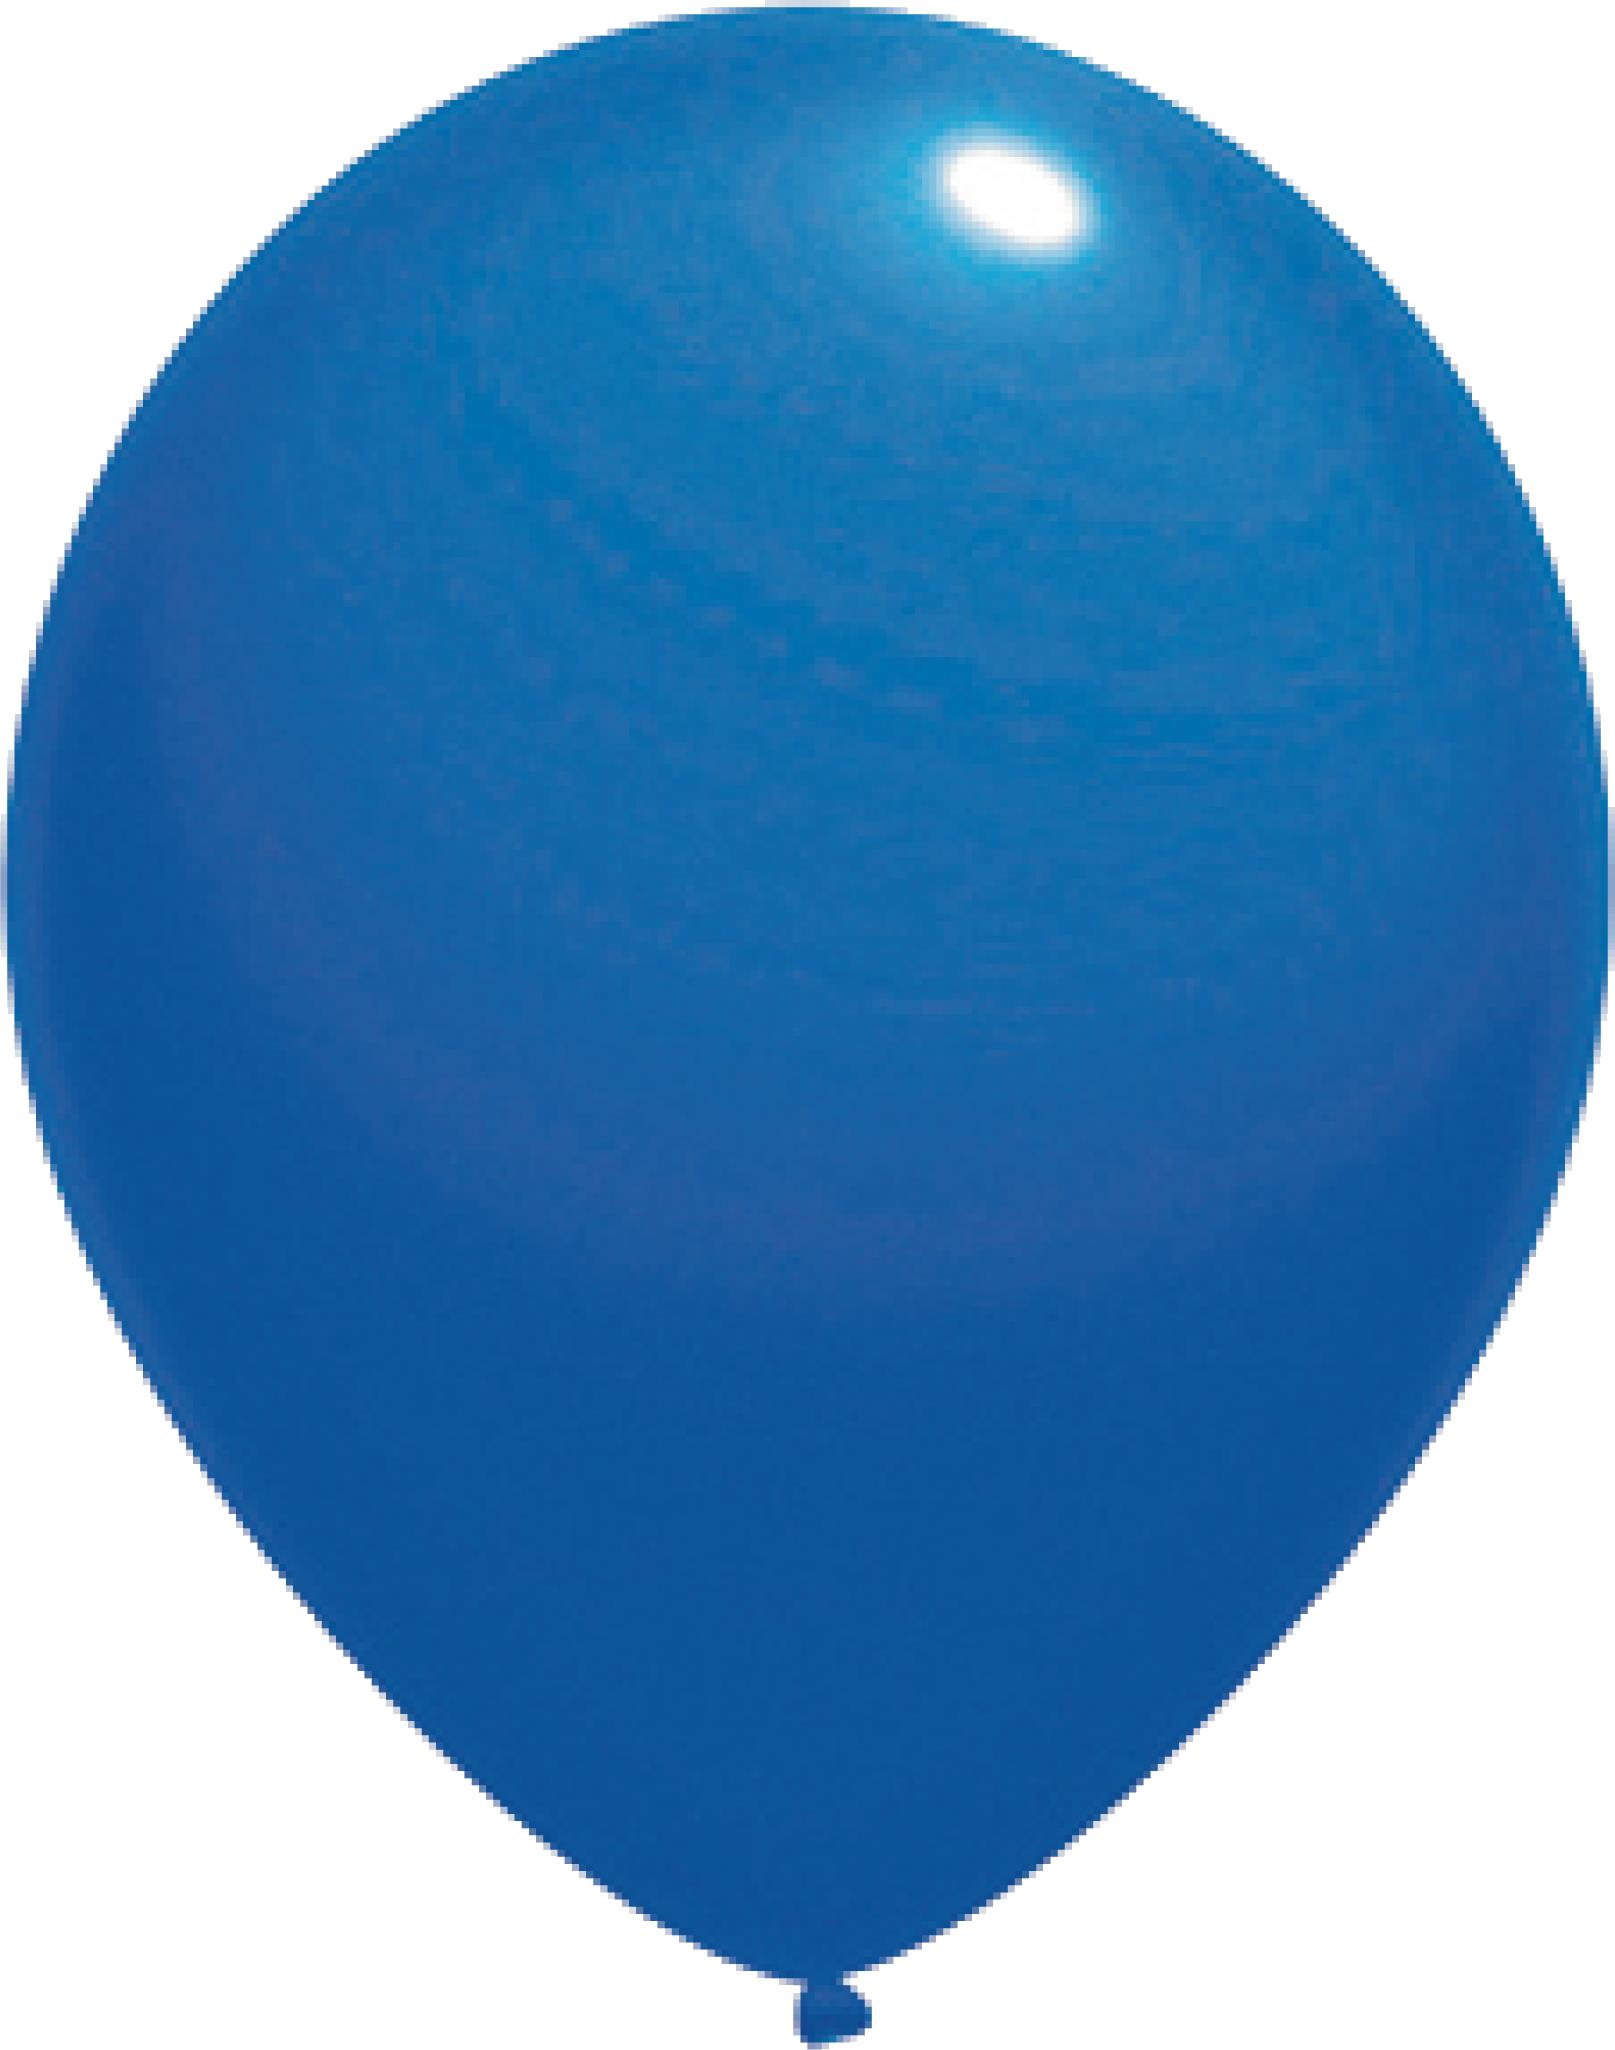 Ballons de baudruche personnalisés 35cm - Zaprinta France